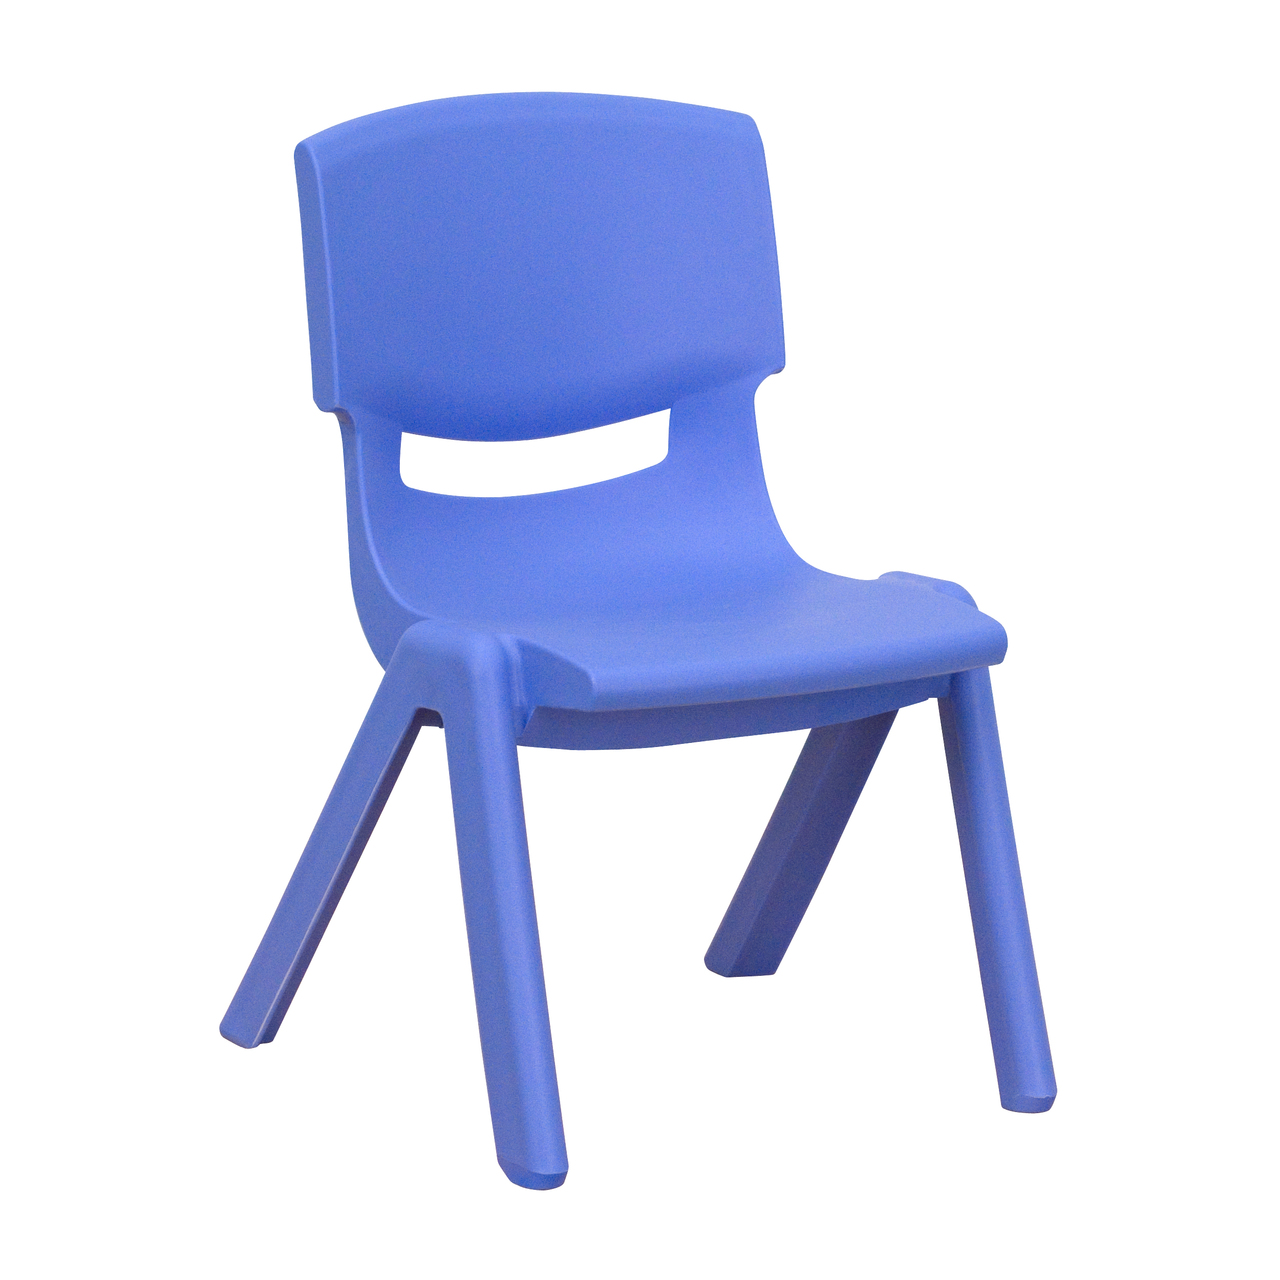 Kids blue chair jpg